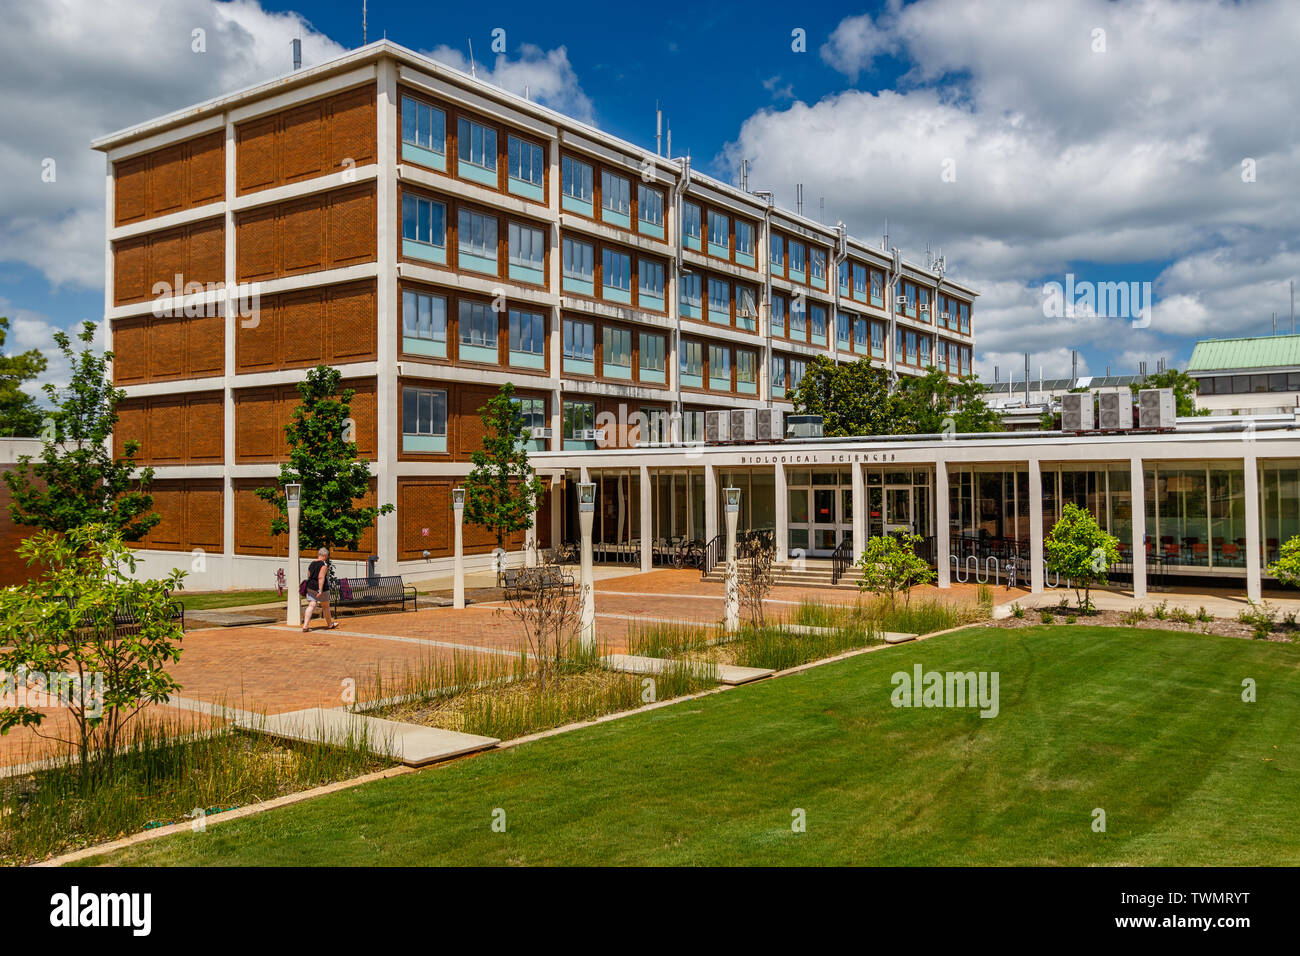 ATHENS, GA, USA - Mai 3: Biologische Wissenschaften Gebäude am 3. Mai 2019 an der Universität von Georgia in Athens, Georgia. Stockfoto